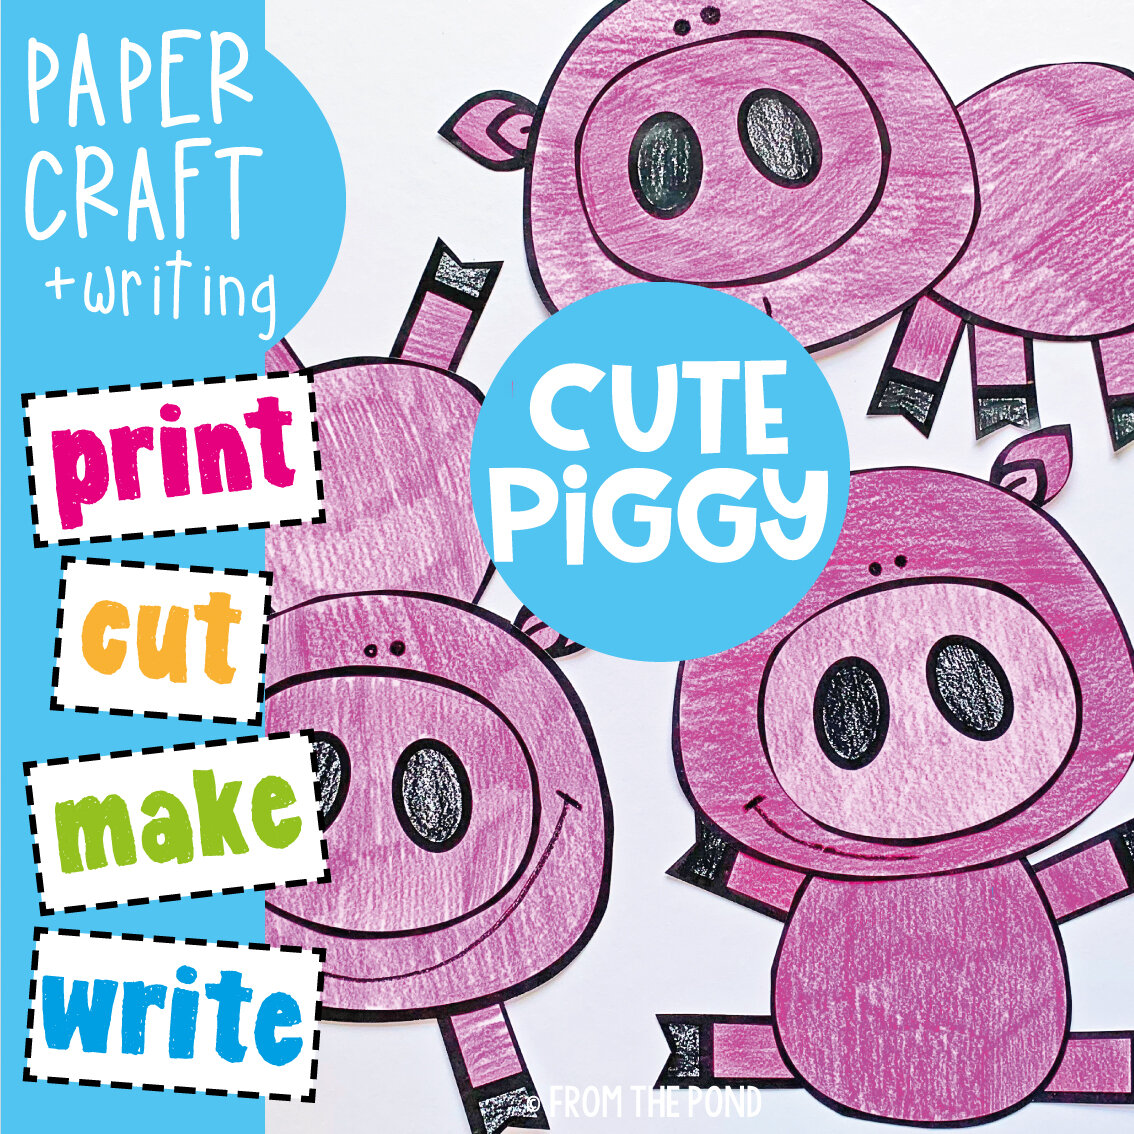 Cute Piggy Craft